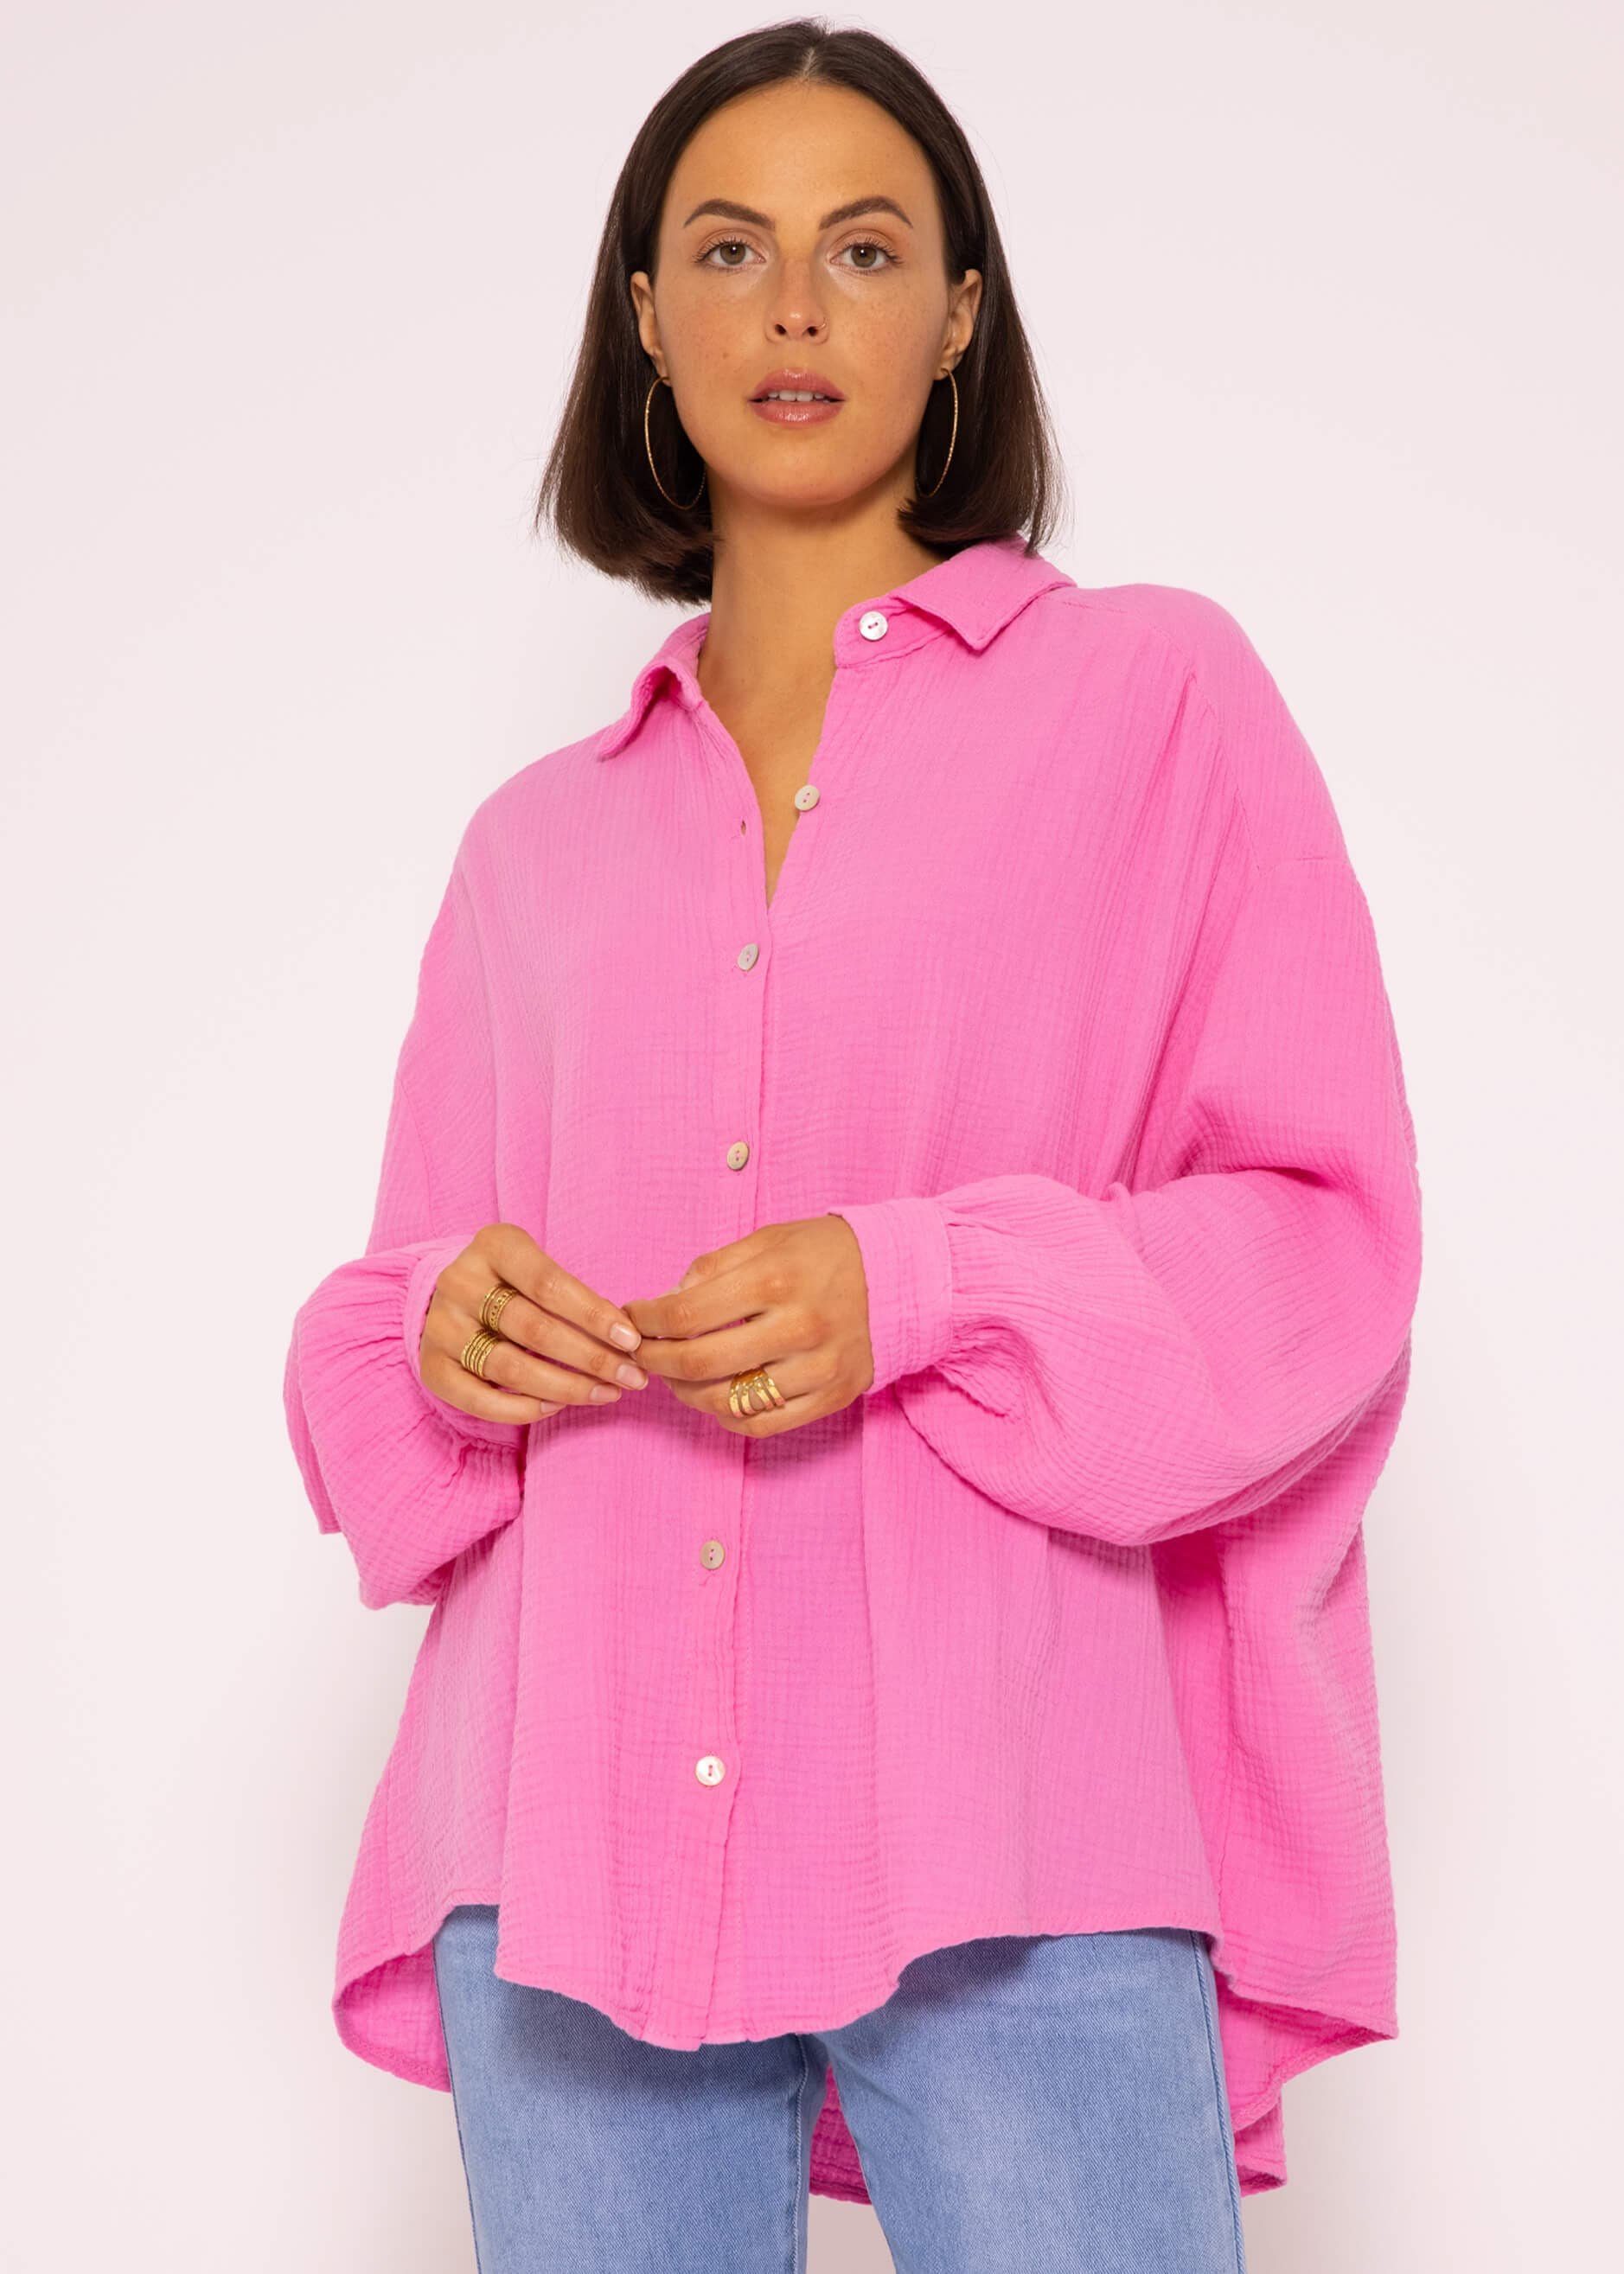 Pinke Rosa Leinenhemden Damen » Leinenhemden kaufen Damen